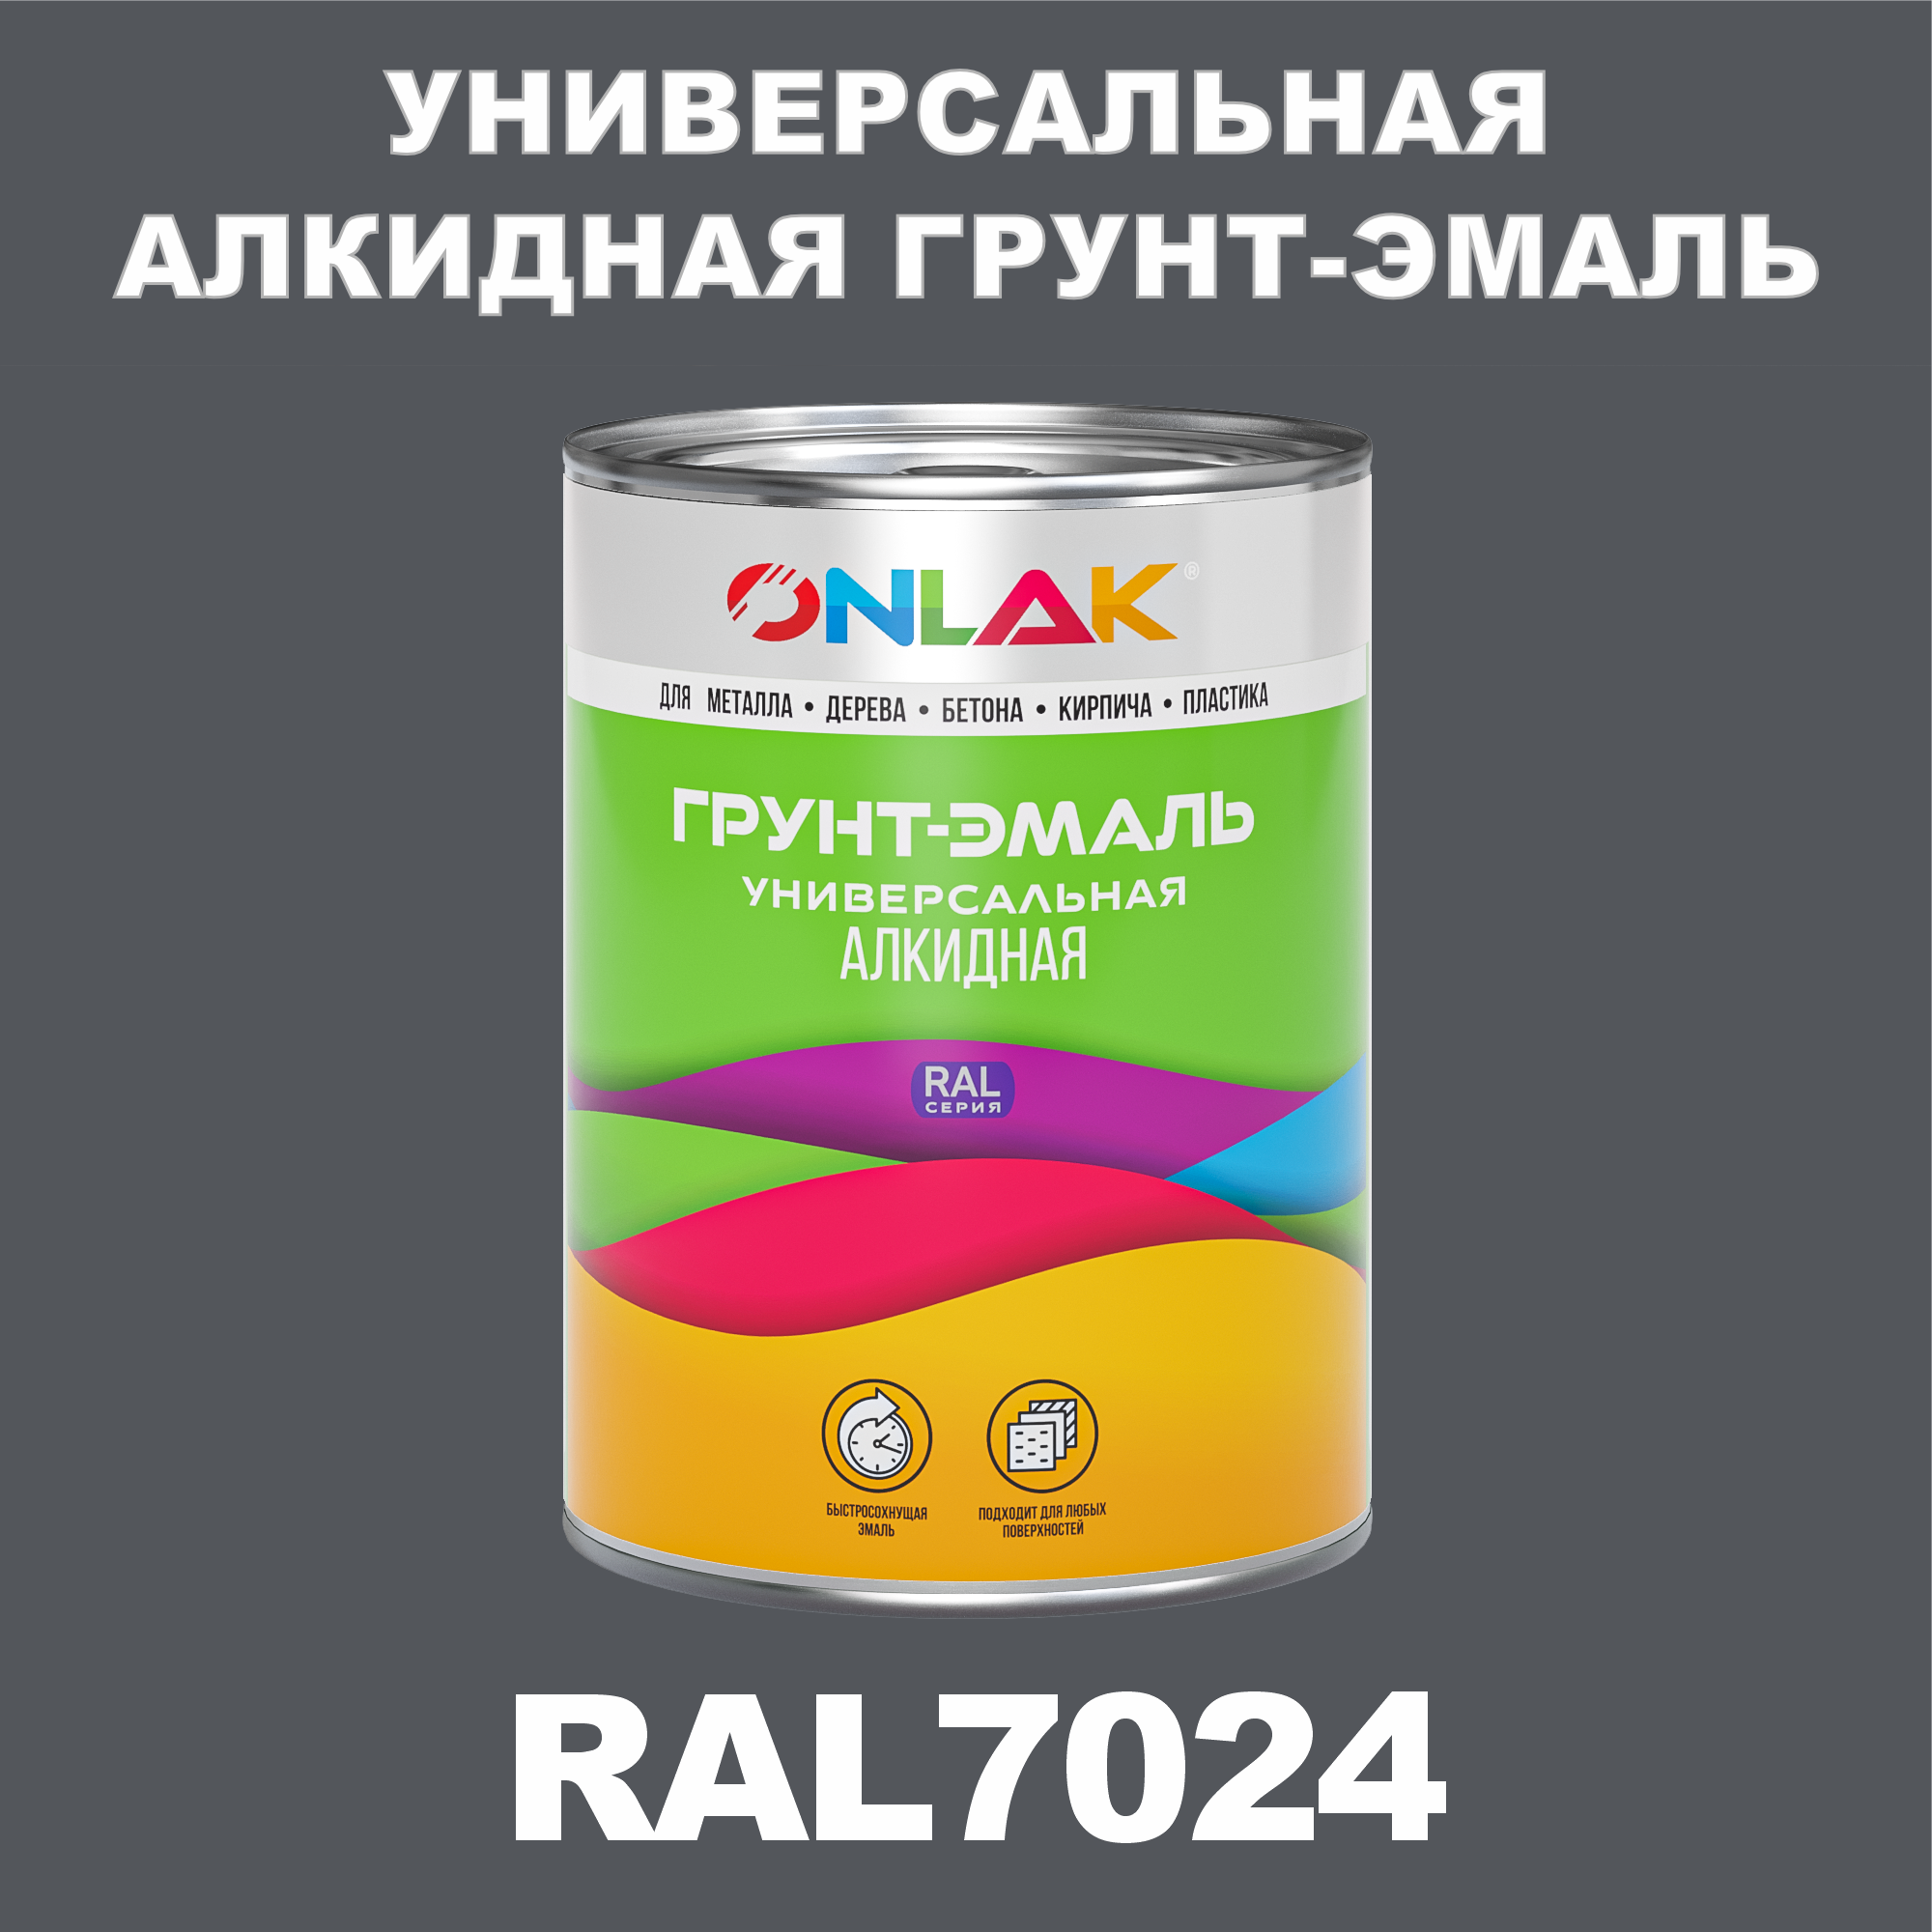 Грунт-эмаль ONLAK 1К RAL7024 антикоррозионная алкидная по металлу по ржавчине 1 кг грунт эмаль yollo по ржавчине алкидная серая 0 9 кг